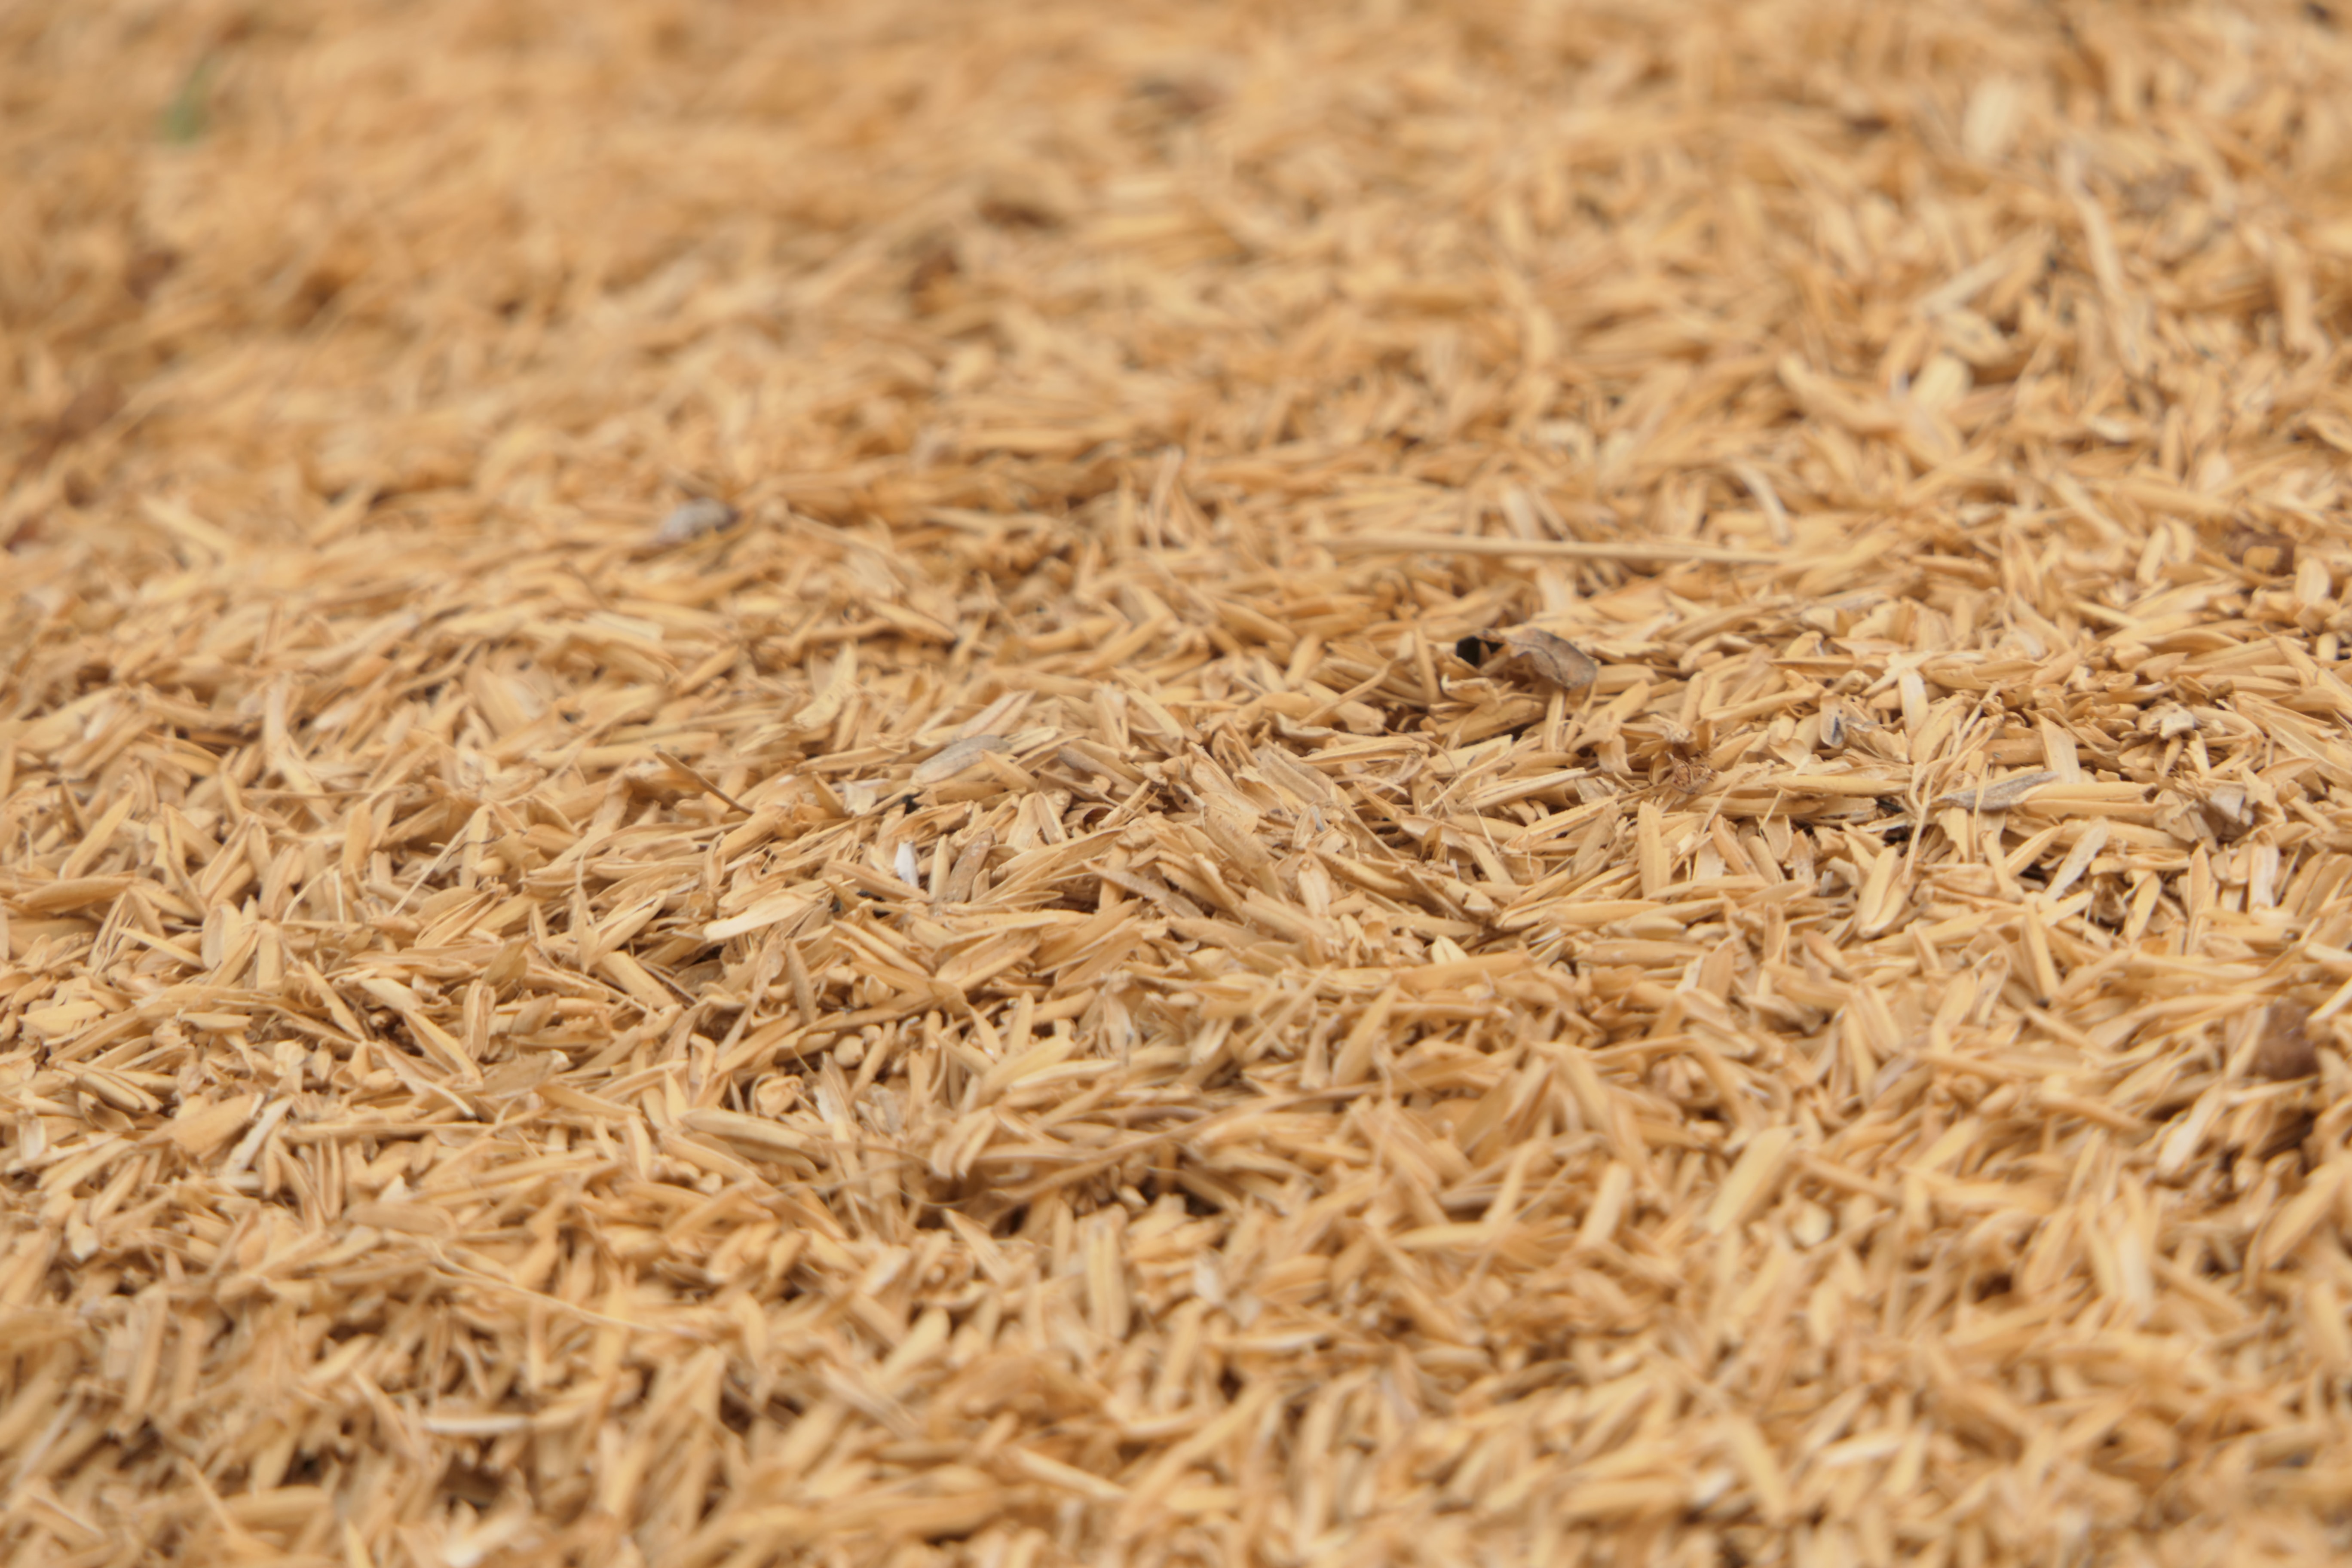 논에서 채취를 한 벼의 이삭을 탈거하여 속 알맹이인 쌀은 다 빼내고&#44; 껍데기인 쌀겨만 모아서 바닥에 펼쳐놓고 확대하여 찍은 사진